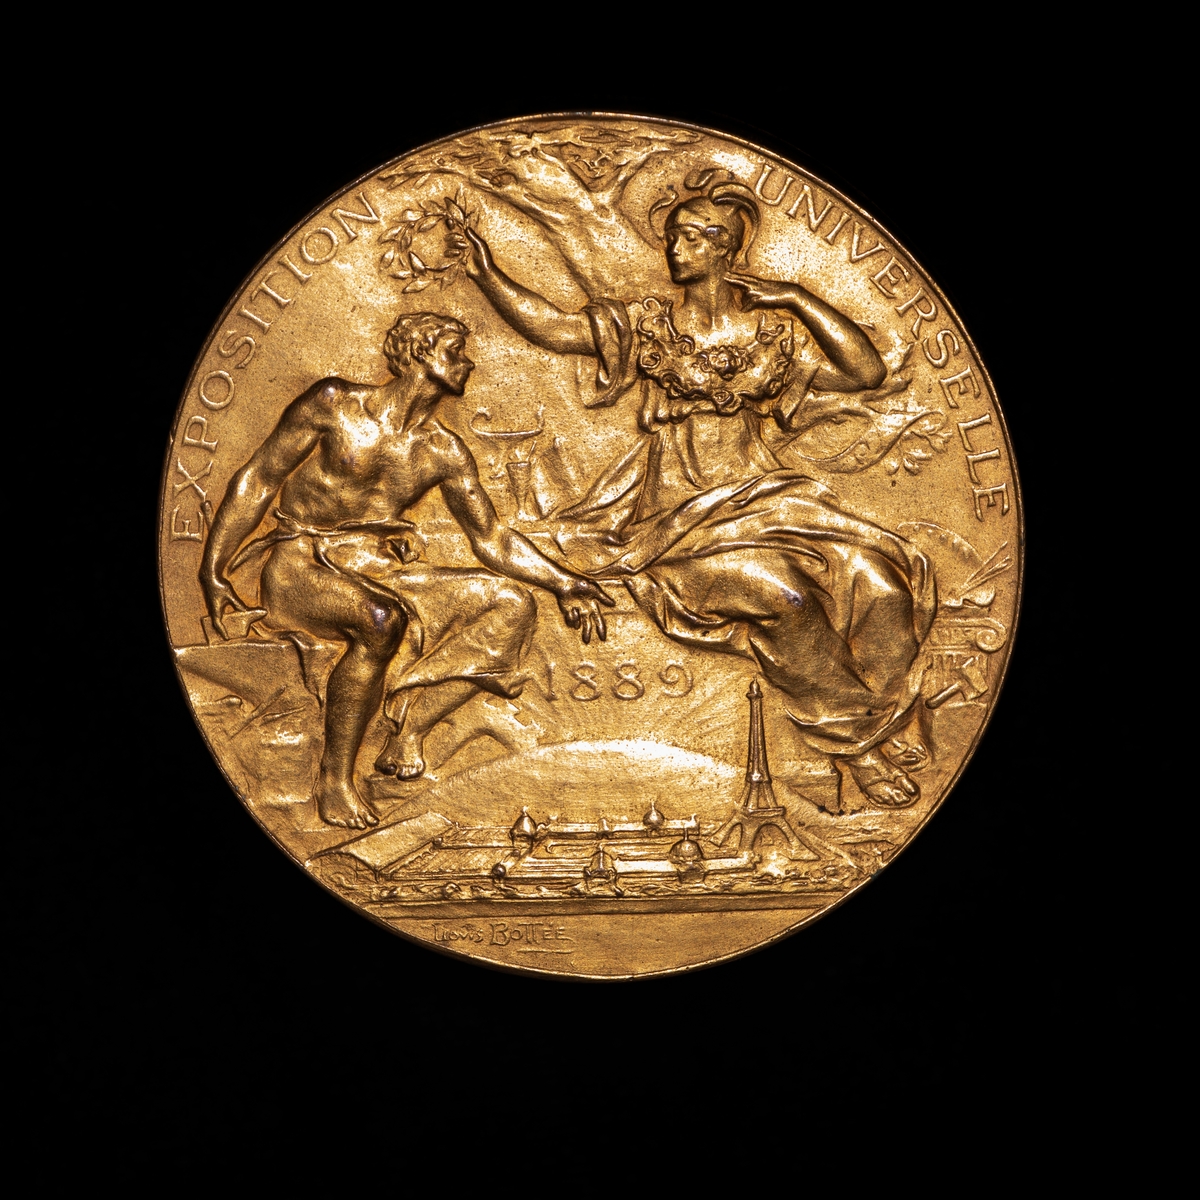 Gullmedalje fra utstilling i Paris 1889. På adversen kvinnelig guddom overrekker laurbærkrans til mann. På revers sittende engel spiller basun.